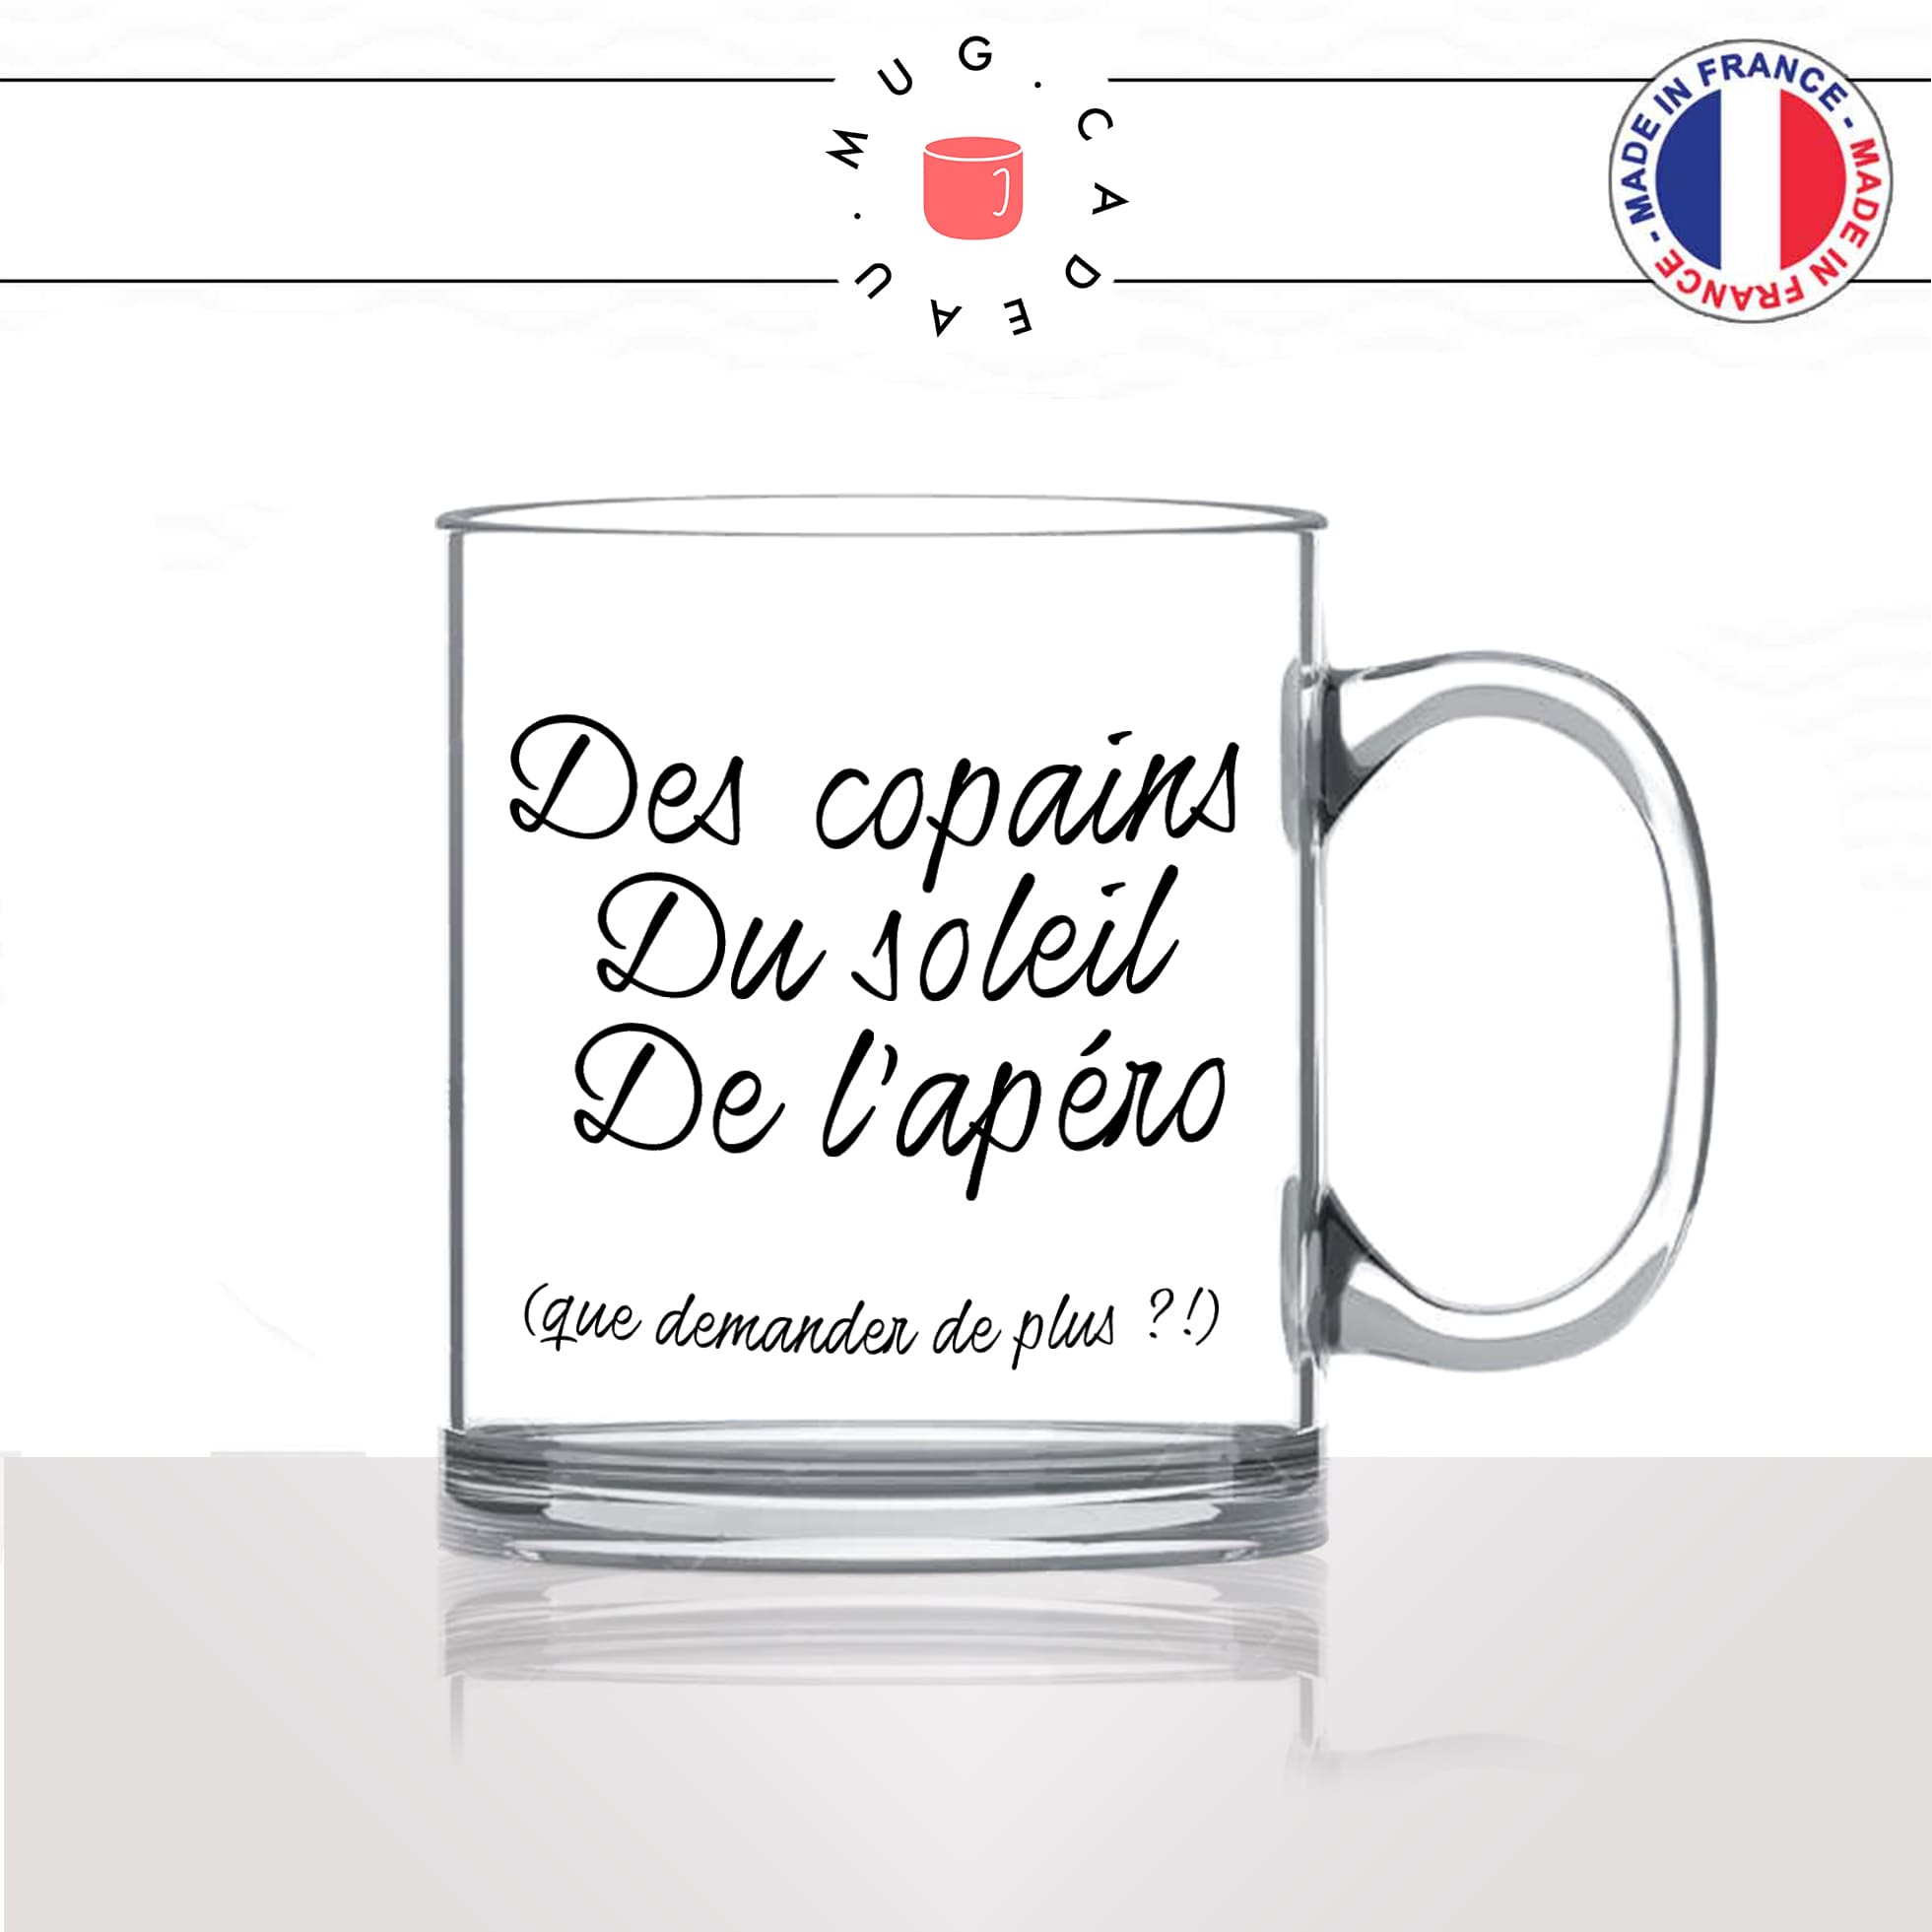 mug-tasse-en-verre-transparent-glass-copains-soleil-apéro-vacances-week-end-vin-biere-homme-femme-humour-fun-cool-idée-cadeau-original2